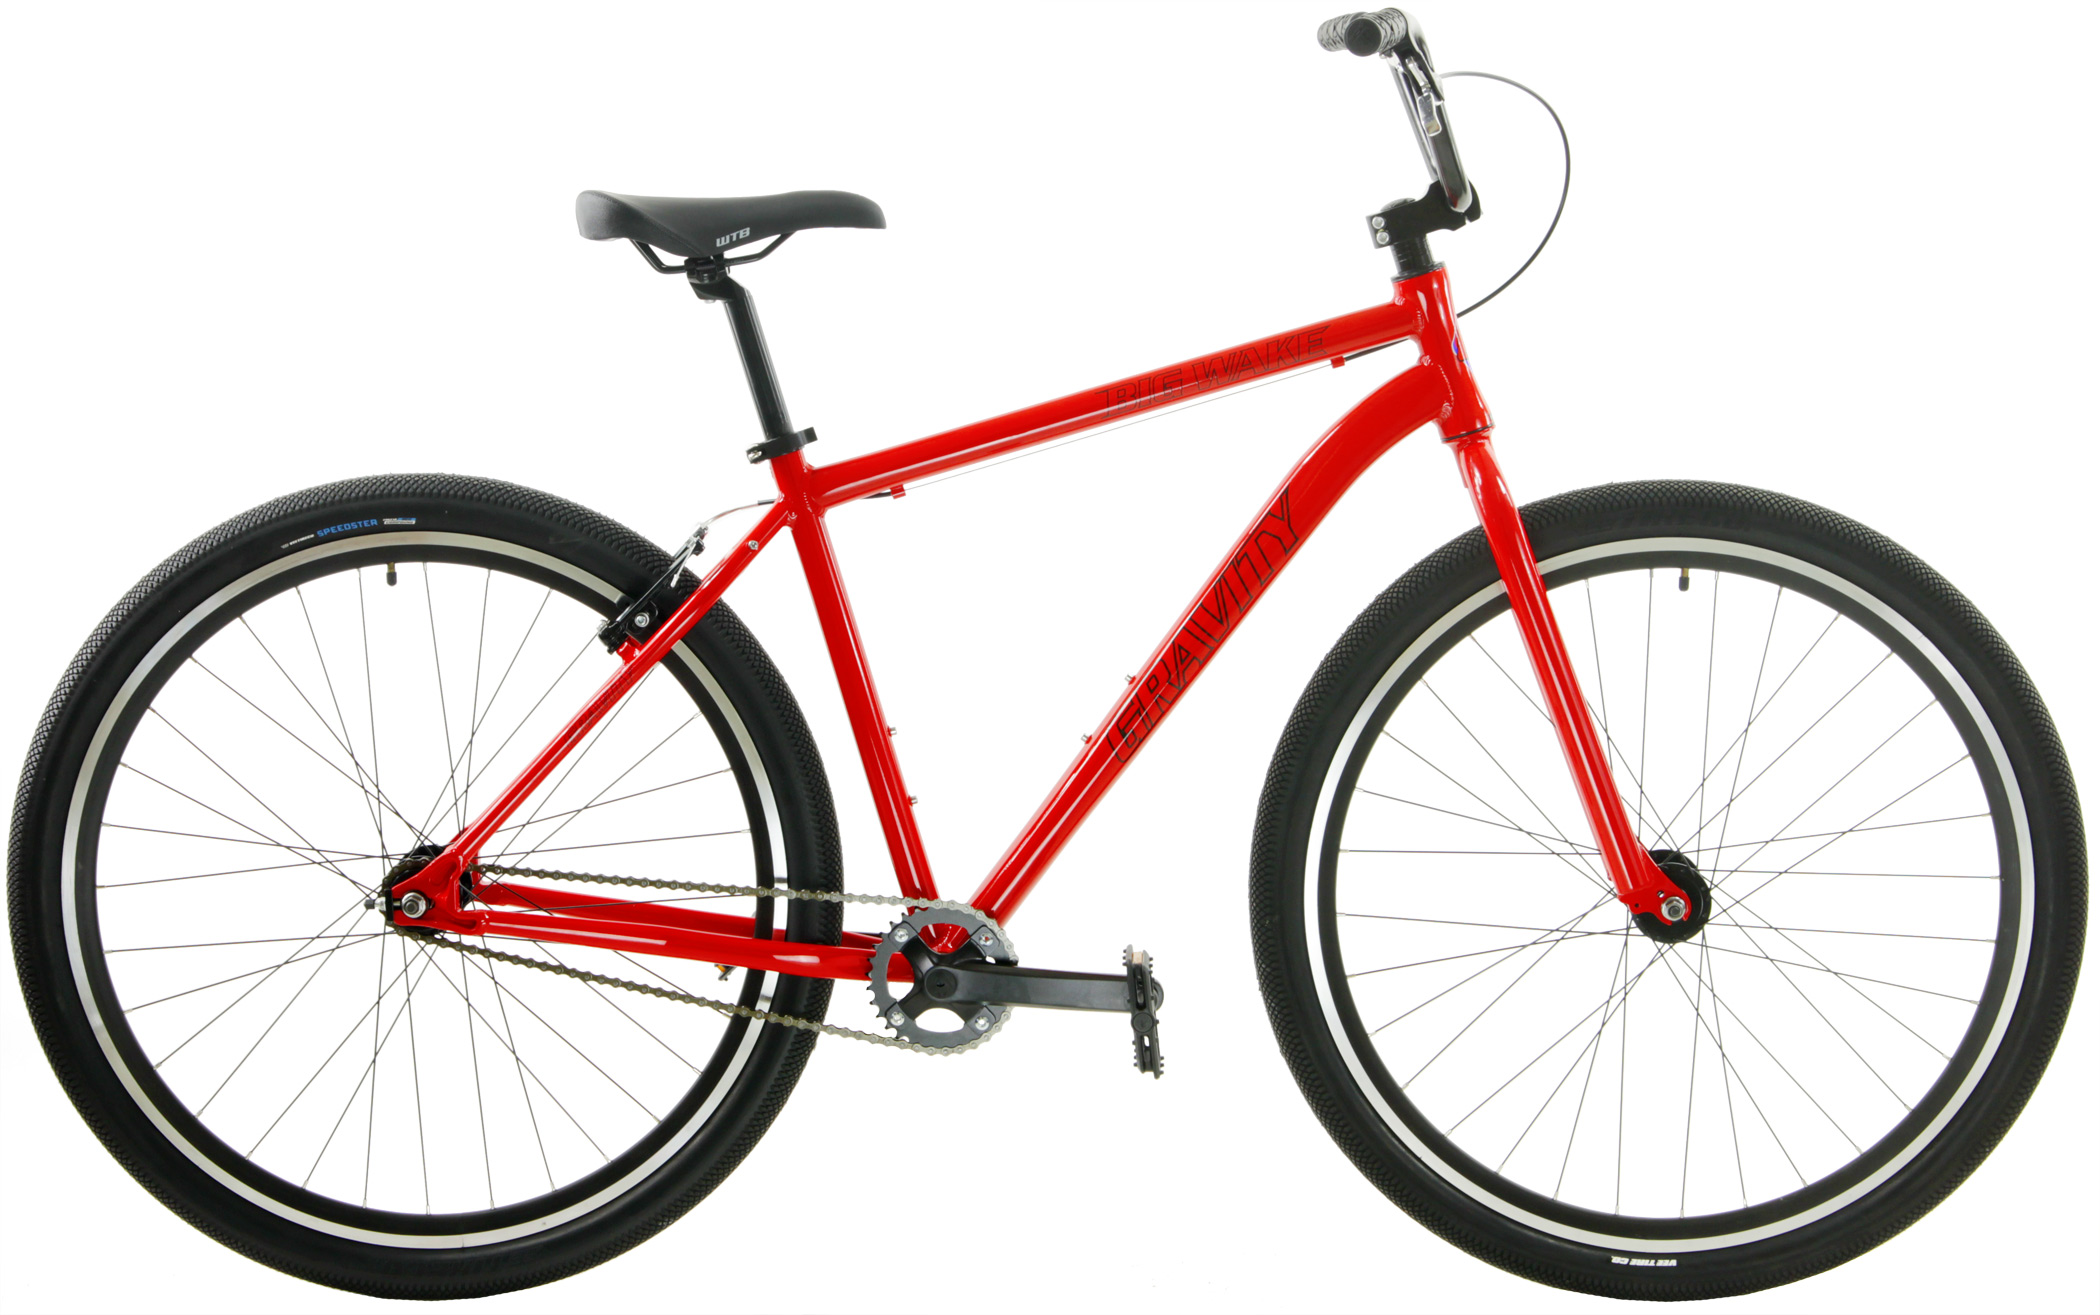 a red bike